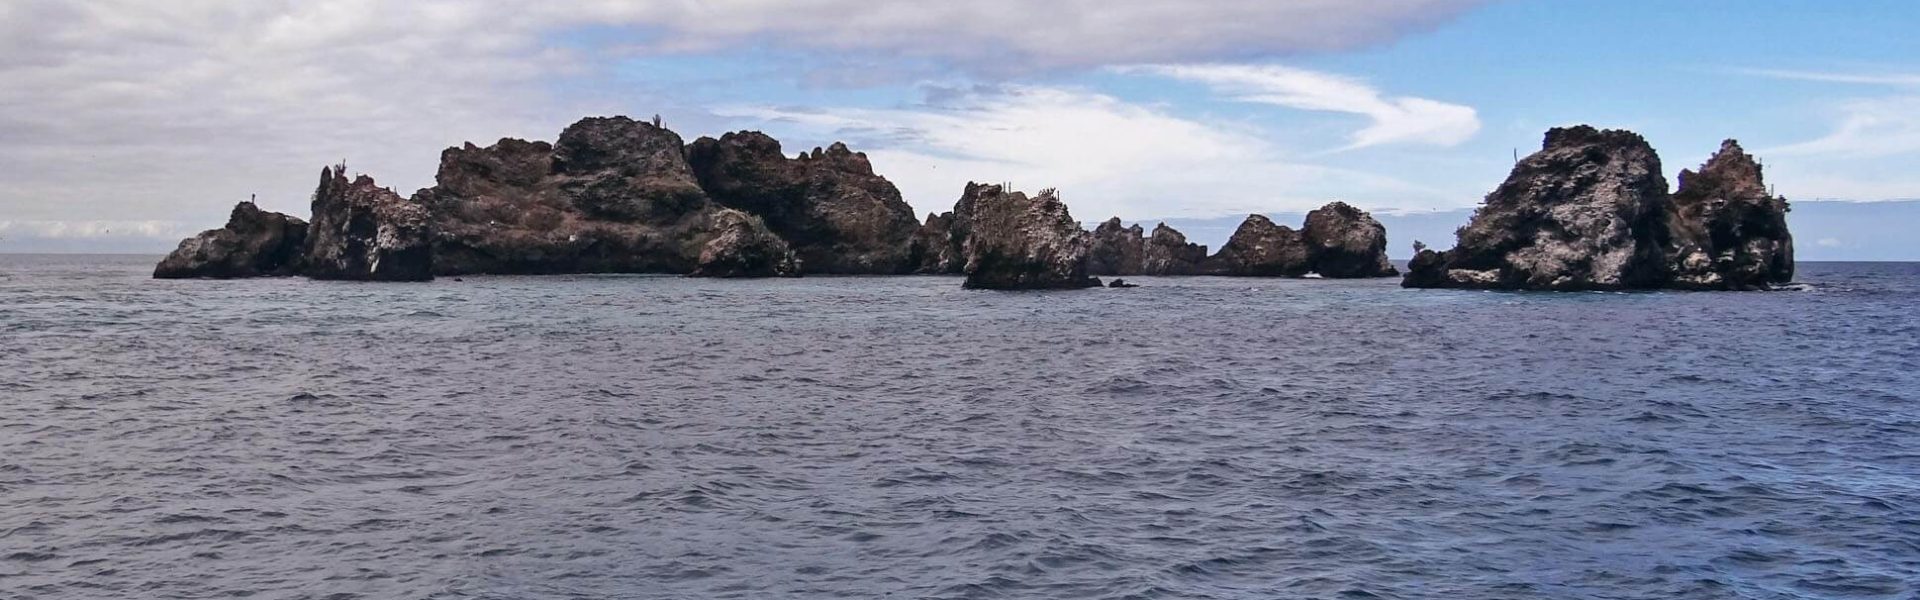 Islotes en Galápagos